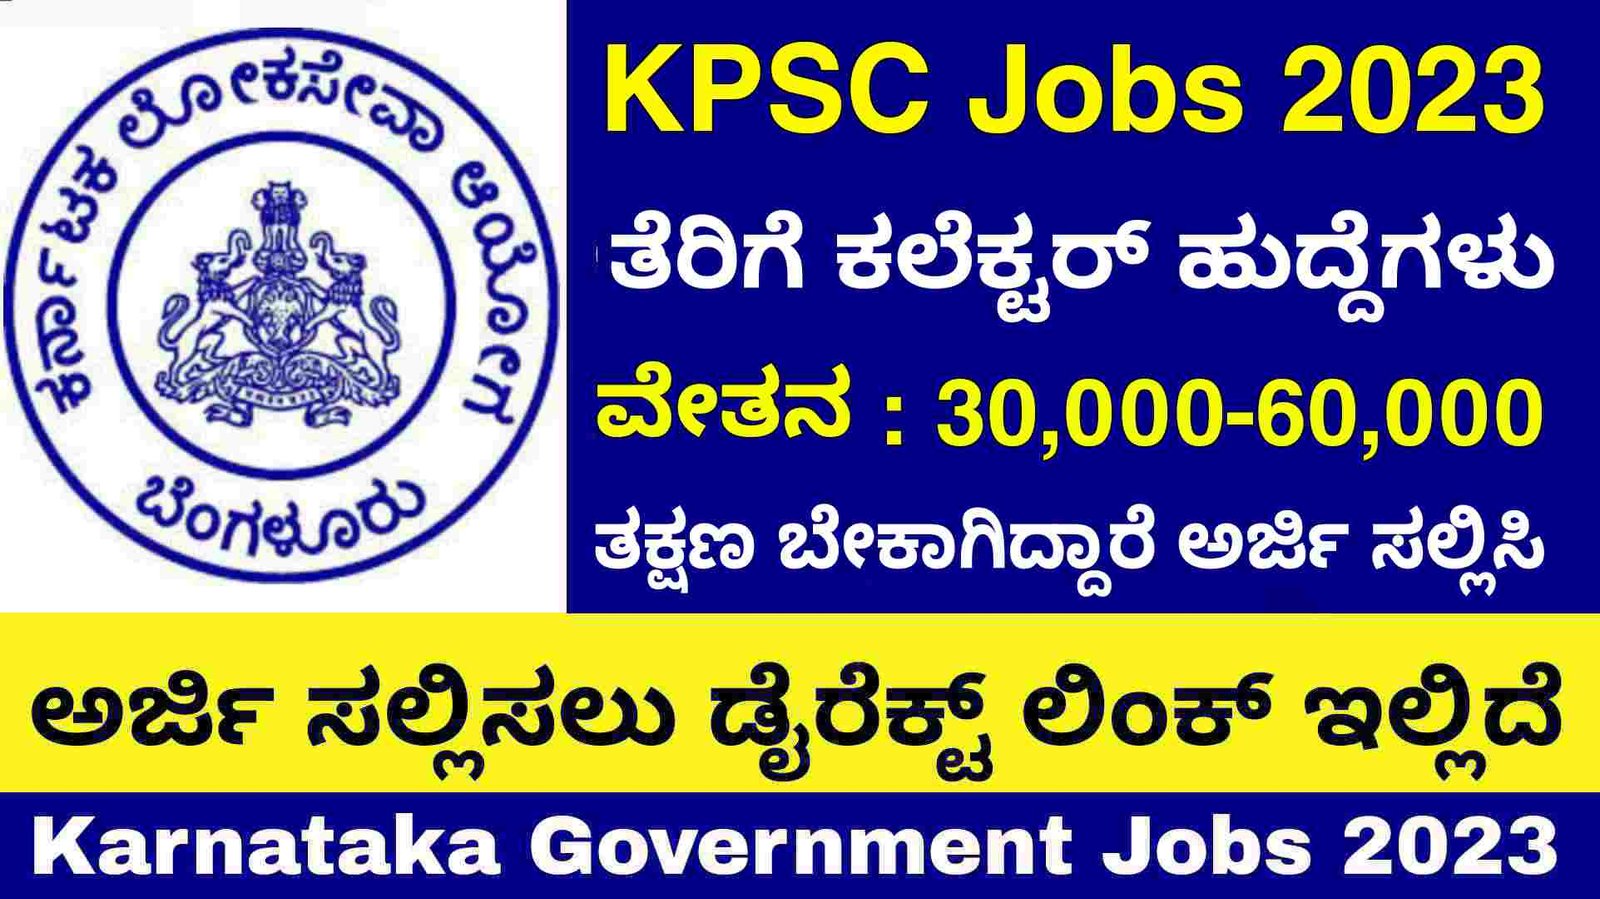 KPSC Jobs